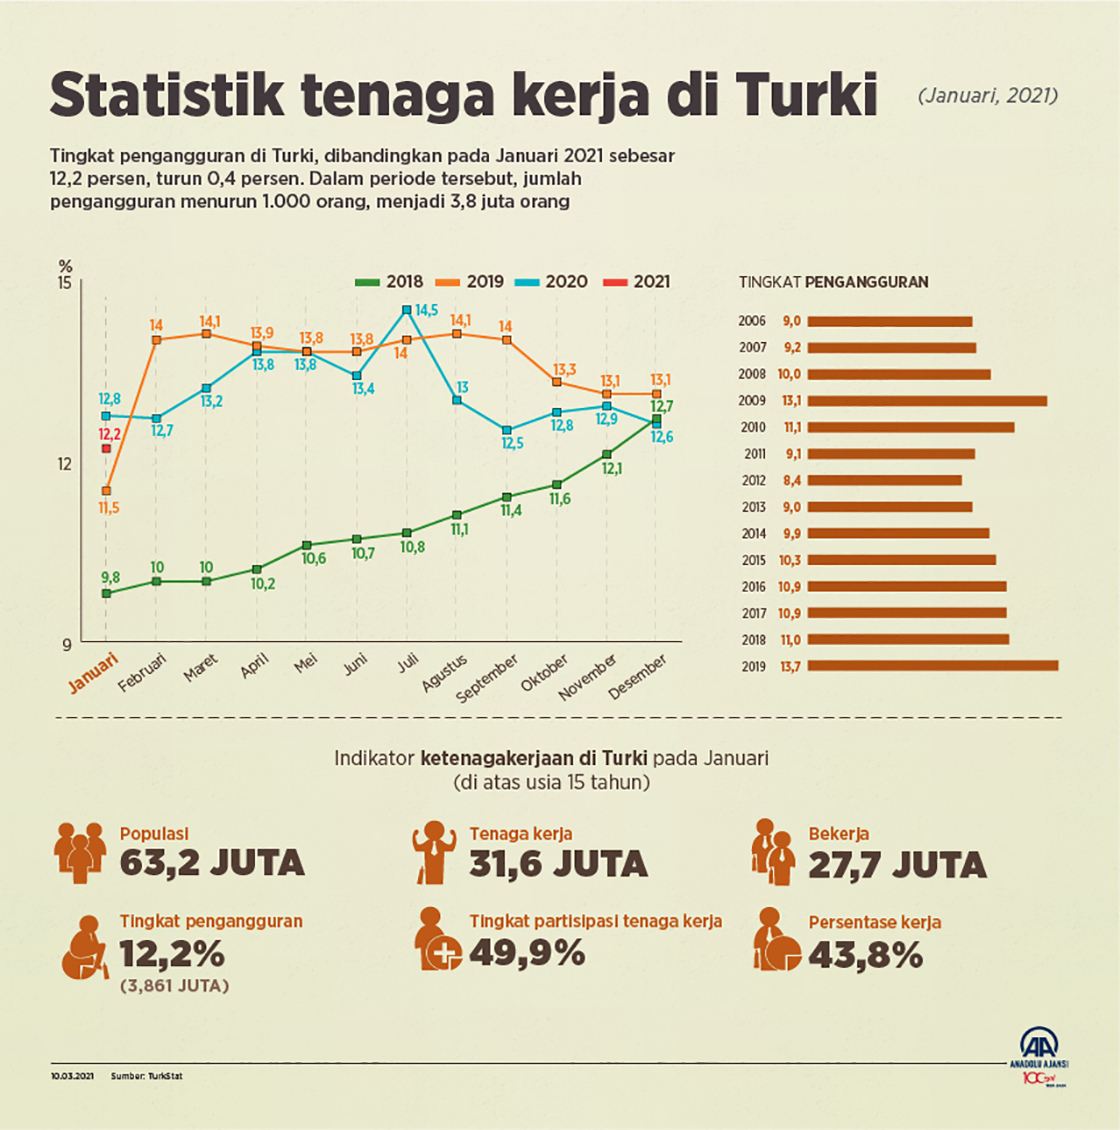 Statistik tenaga kerja di Turki